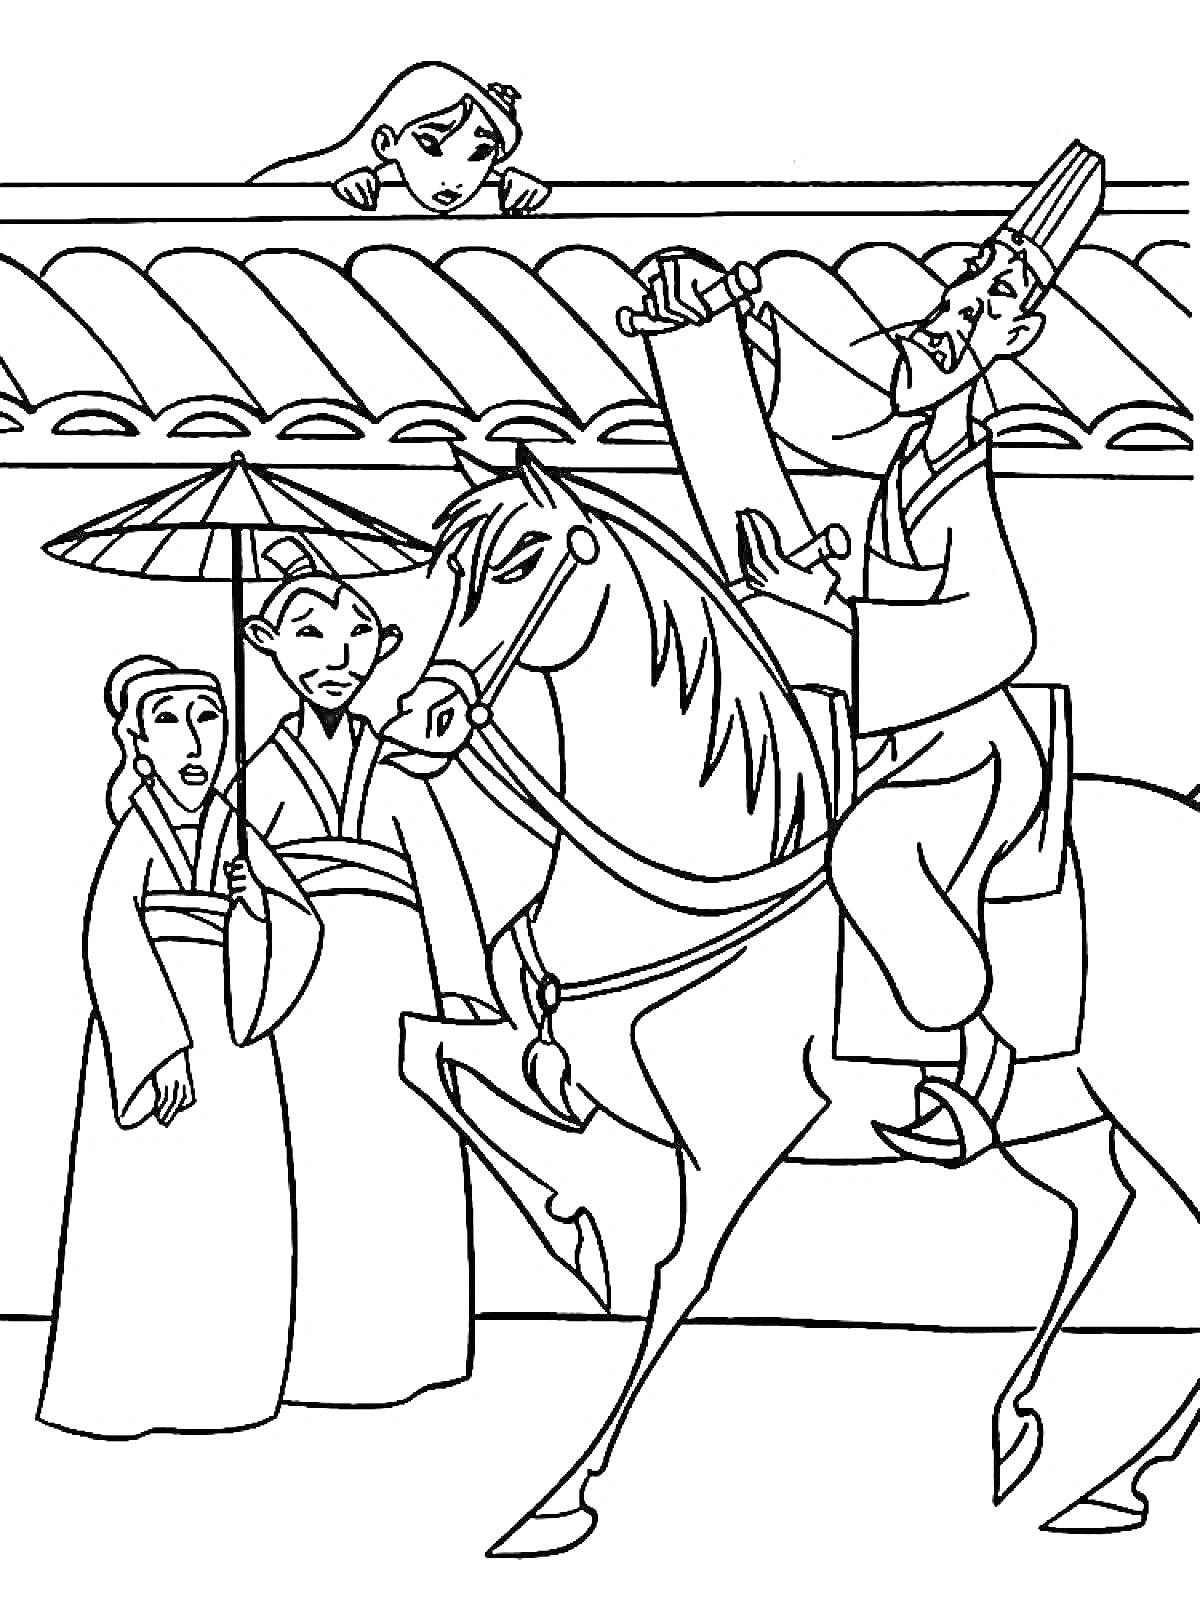 Раскраска Мулан, мужчина на лошади читает указ, две женщины под зонтиком, девушка выглядывает из-за стены